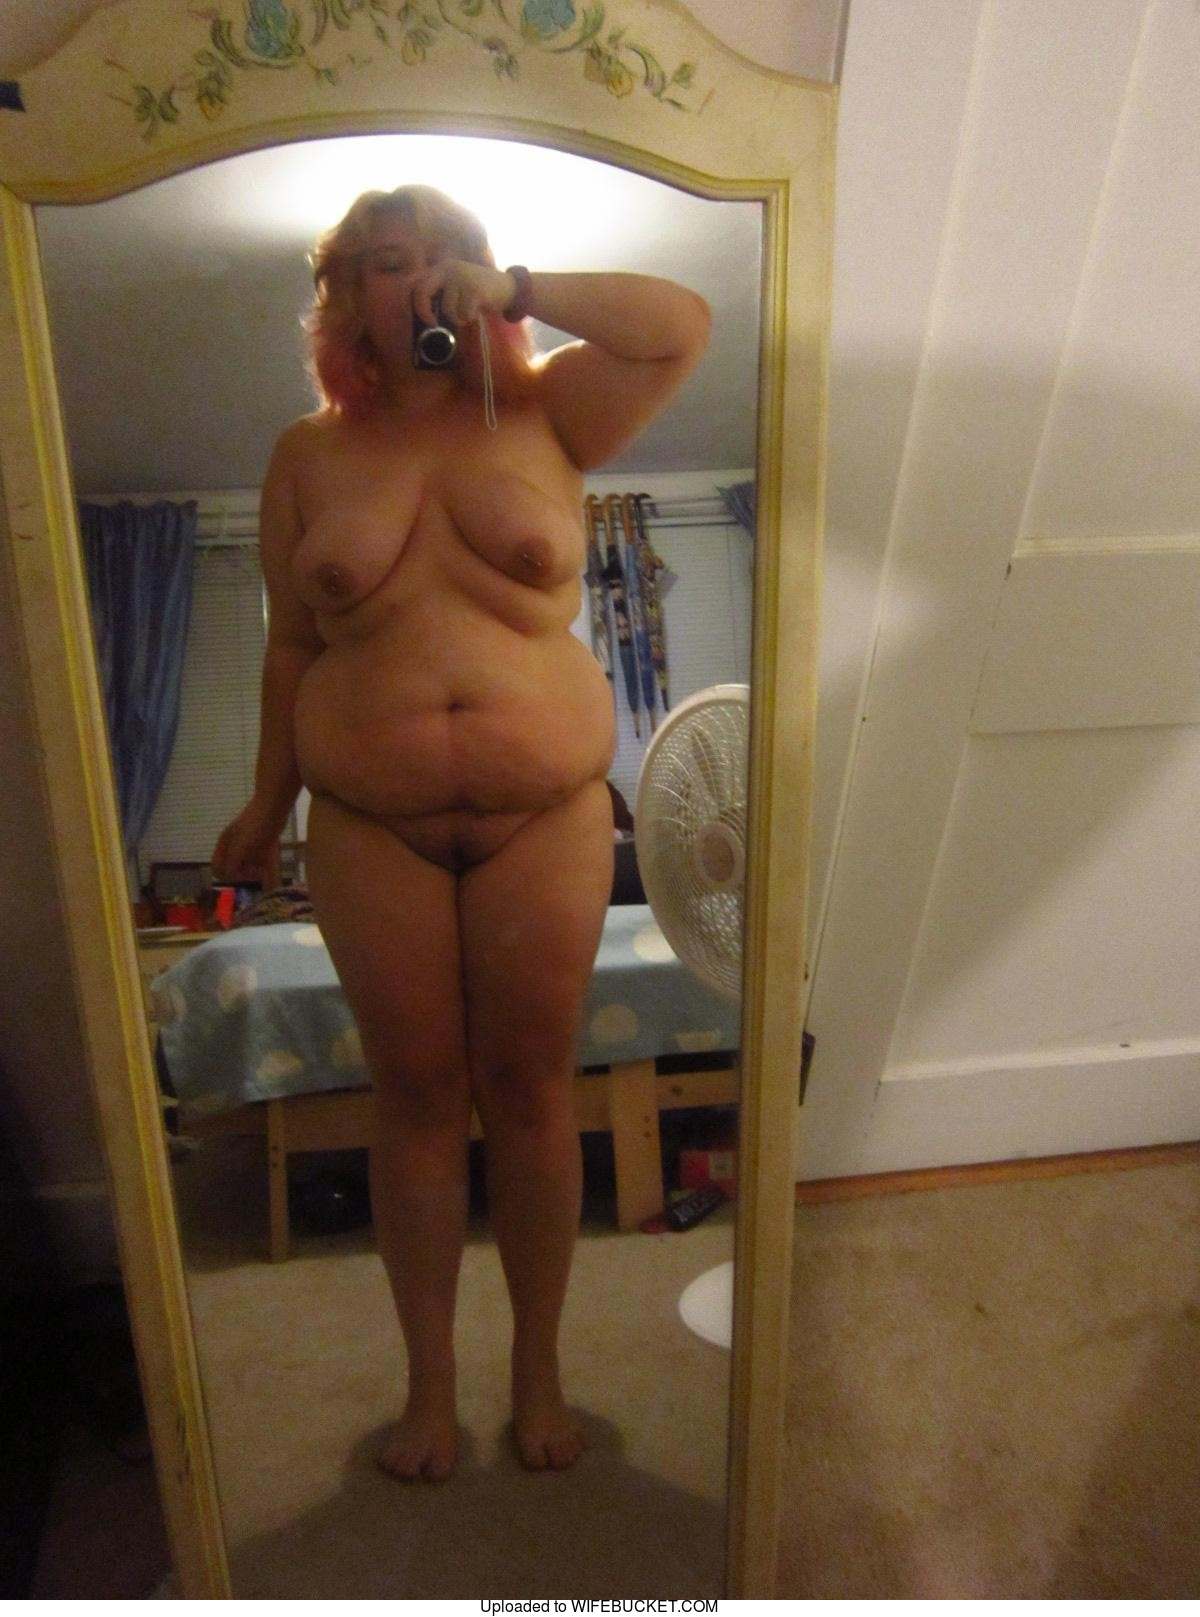 galleries wife blowjob mirror selfie nude gallery pic